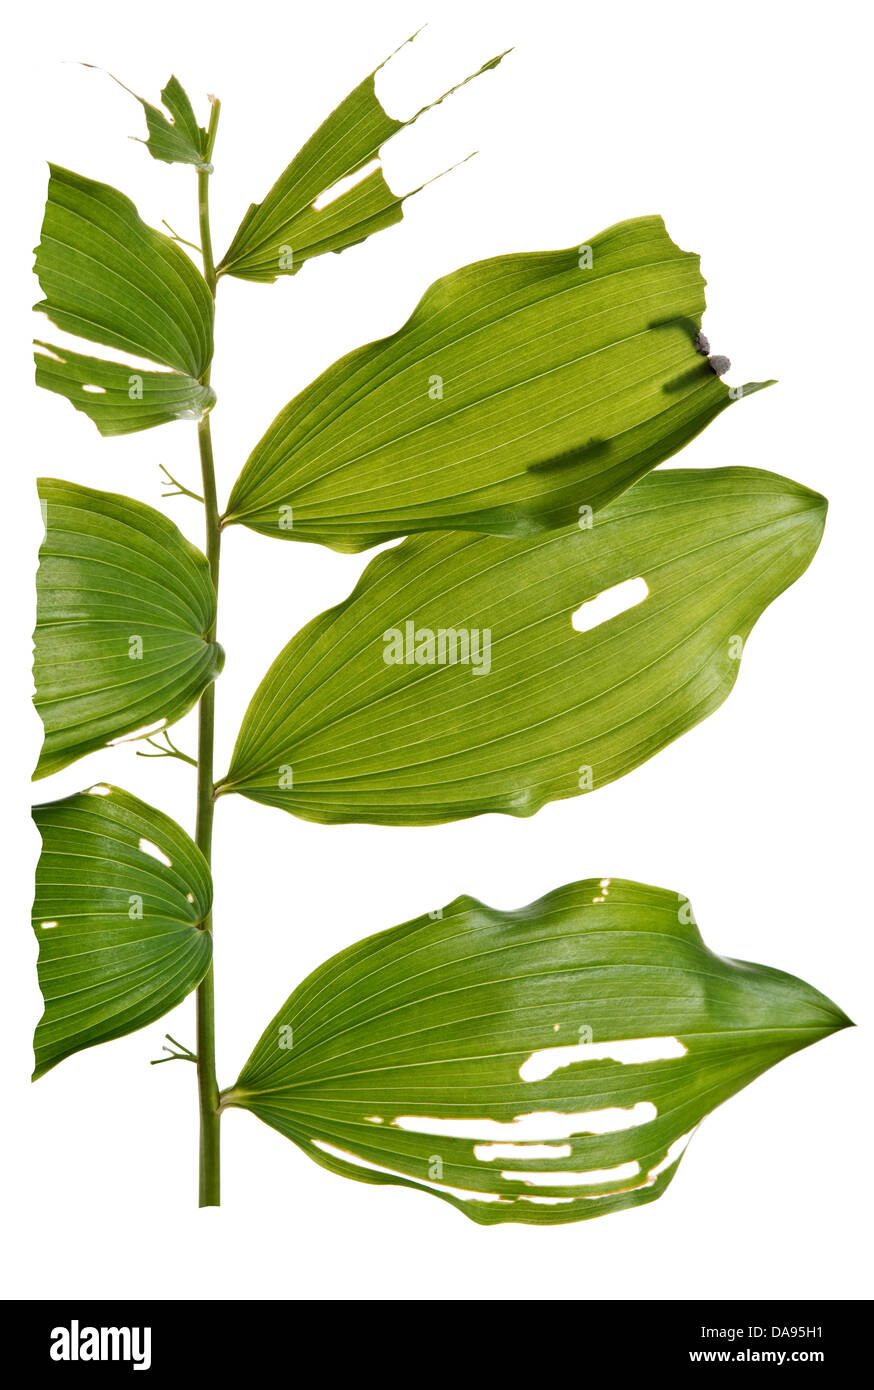 Die Raupe-ähnliche Larvenstadium des Salomonssiegel Blattwespen, Phymatocera Aterrima, frisst die Blätter Salomonssiegel, Polygonatum Stockfoto